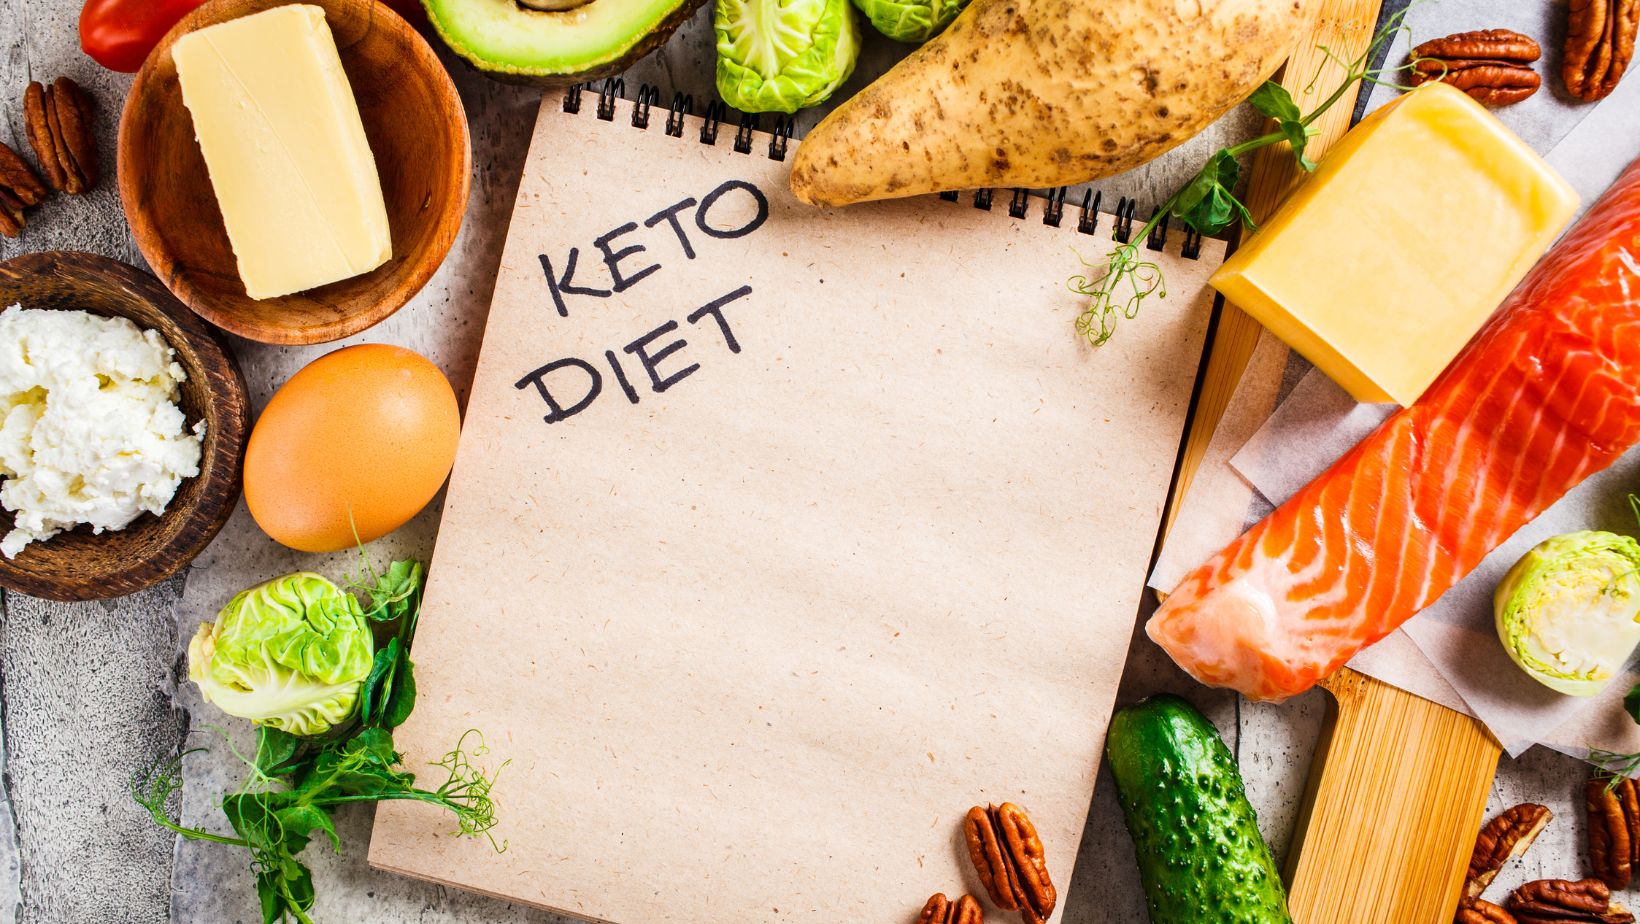 keto diet for women over 40